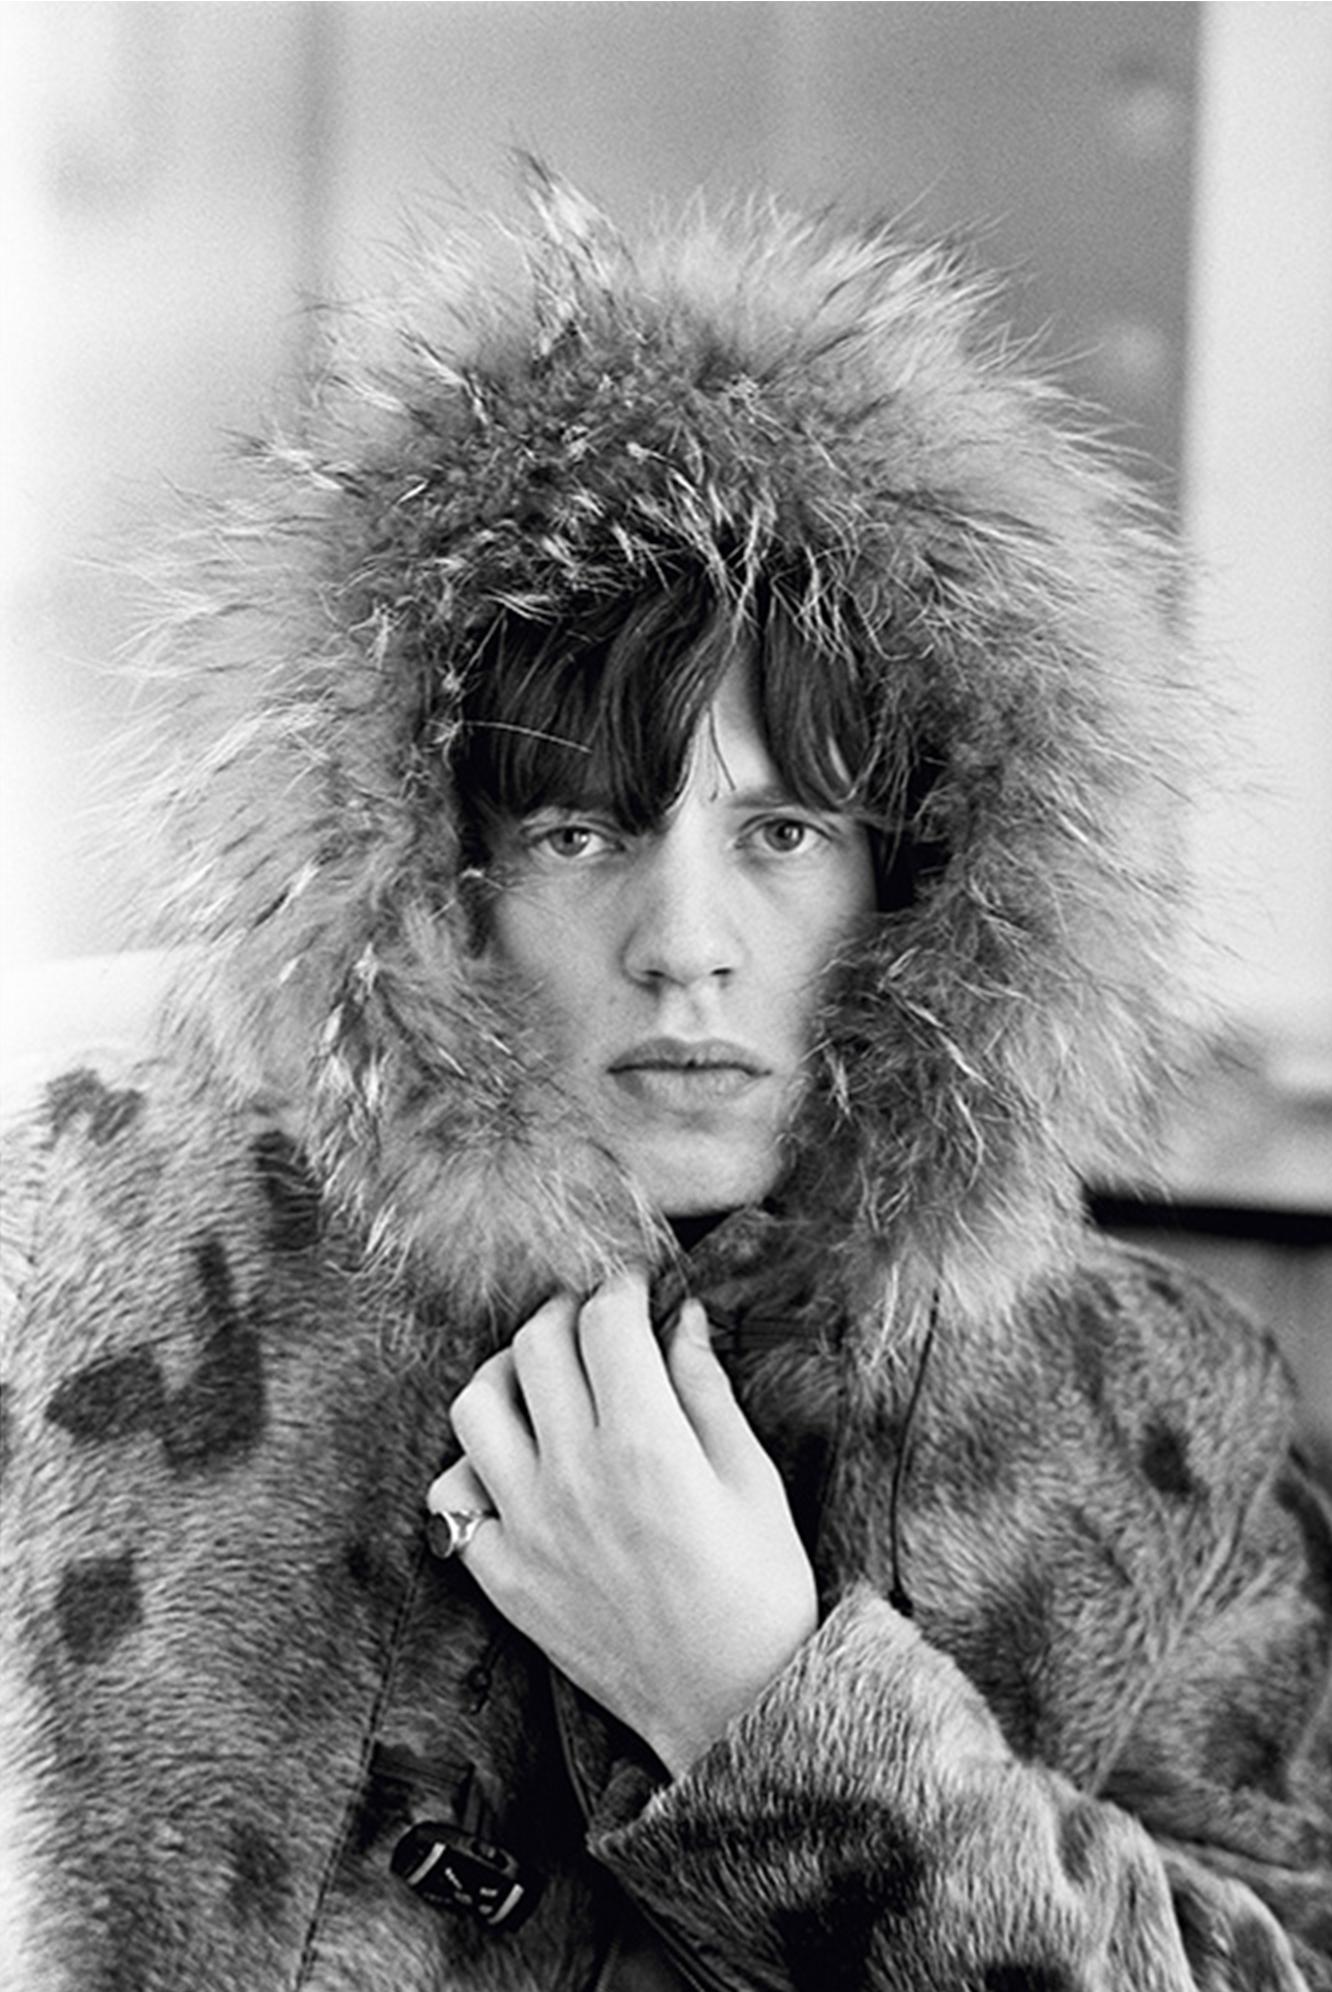 Signierter Fotodruck in limitierter Auflage des Rolling-Stones-Sängers Mick Jagger, der in einem Pelzparka mit pelzbesetzter Kapuze posiert, 1964, von Terry O'Neill

Signierter Druck in limitierter Auflage "Lifetime" - 16x20" 

Silbergelatineabzug.